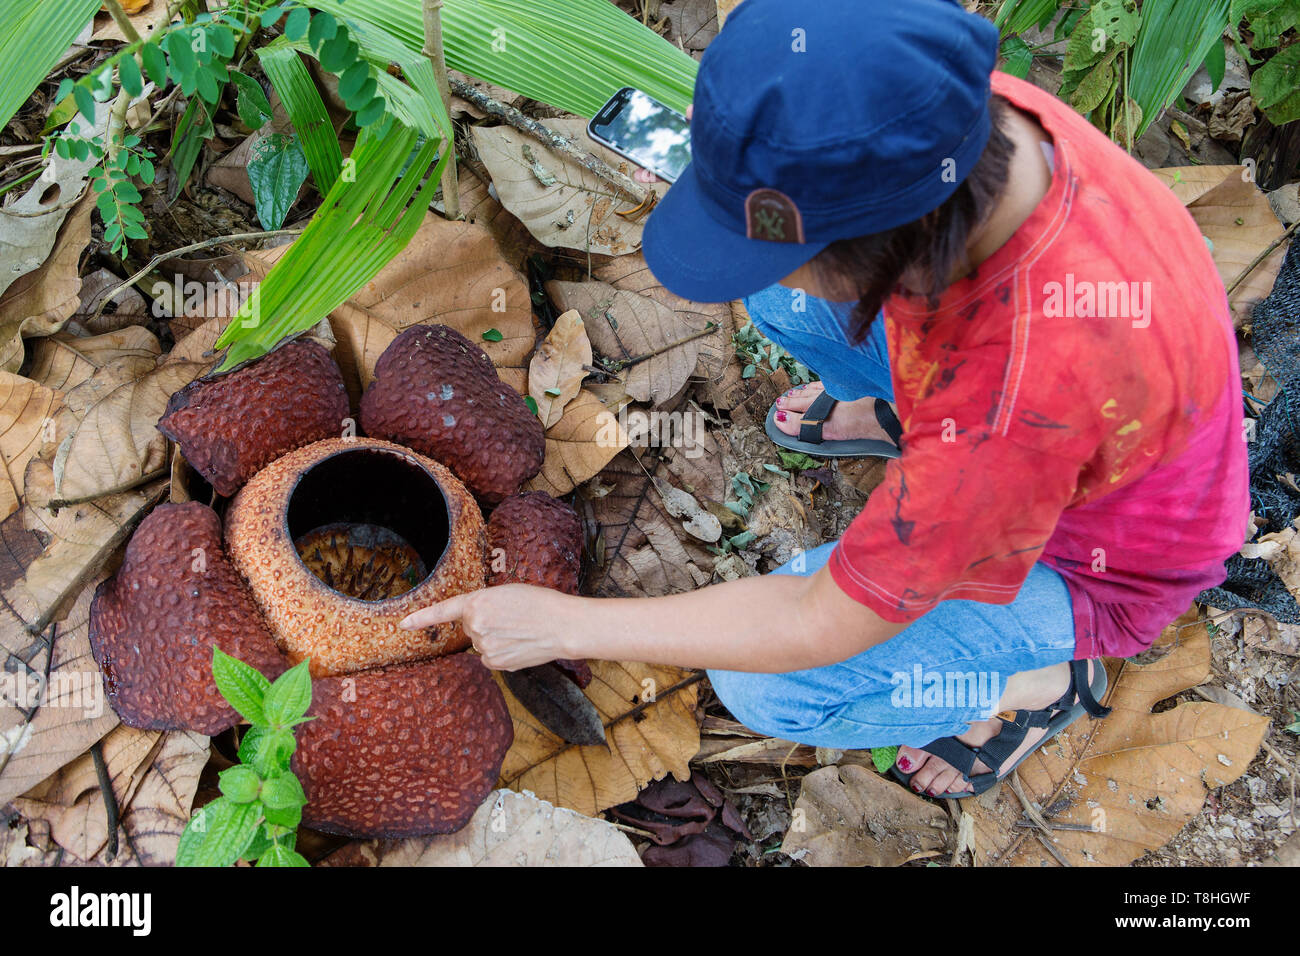 Un vieux de quatre jours en fleurs rafflesia près de Kampung penché Sabah Malaisie, parfois appelé un cadavre et fleur parasite de la vigne de tetrastigma Banque D'Images